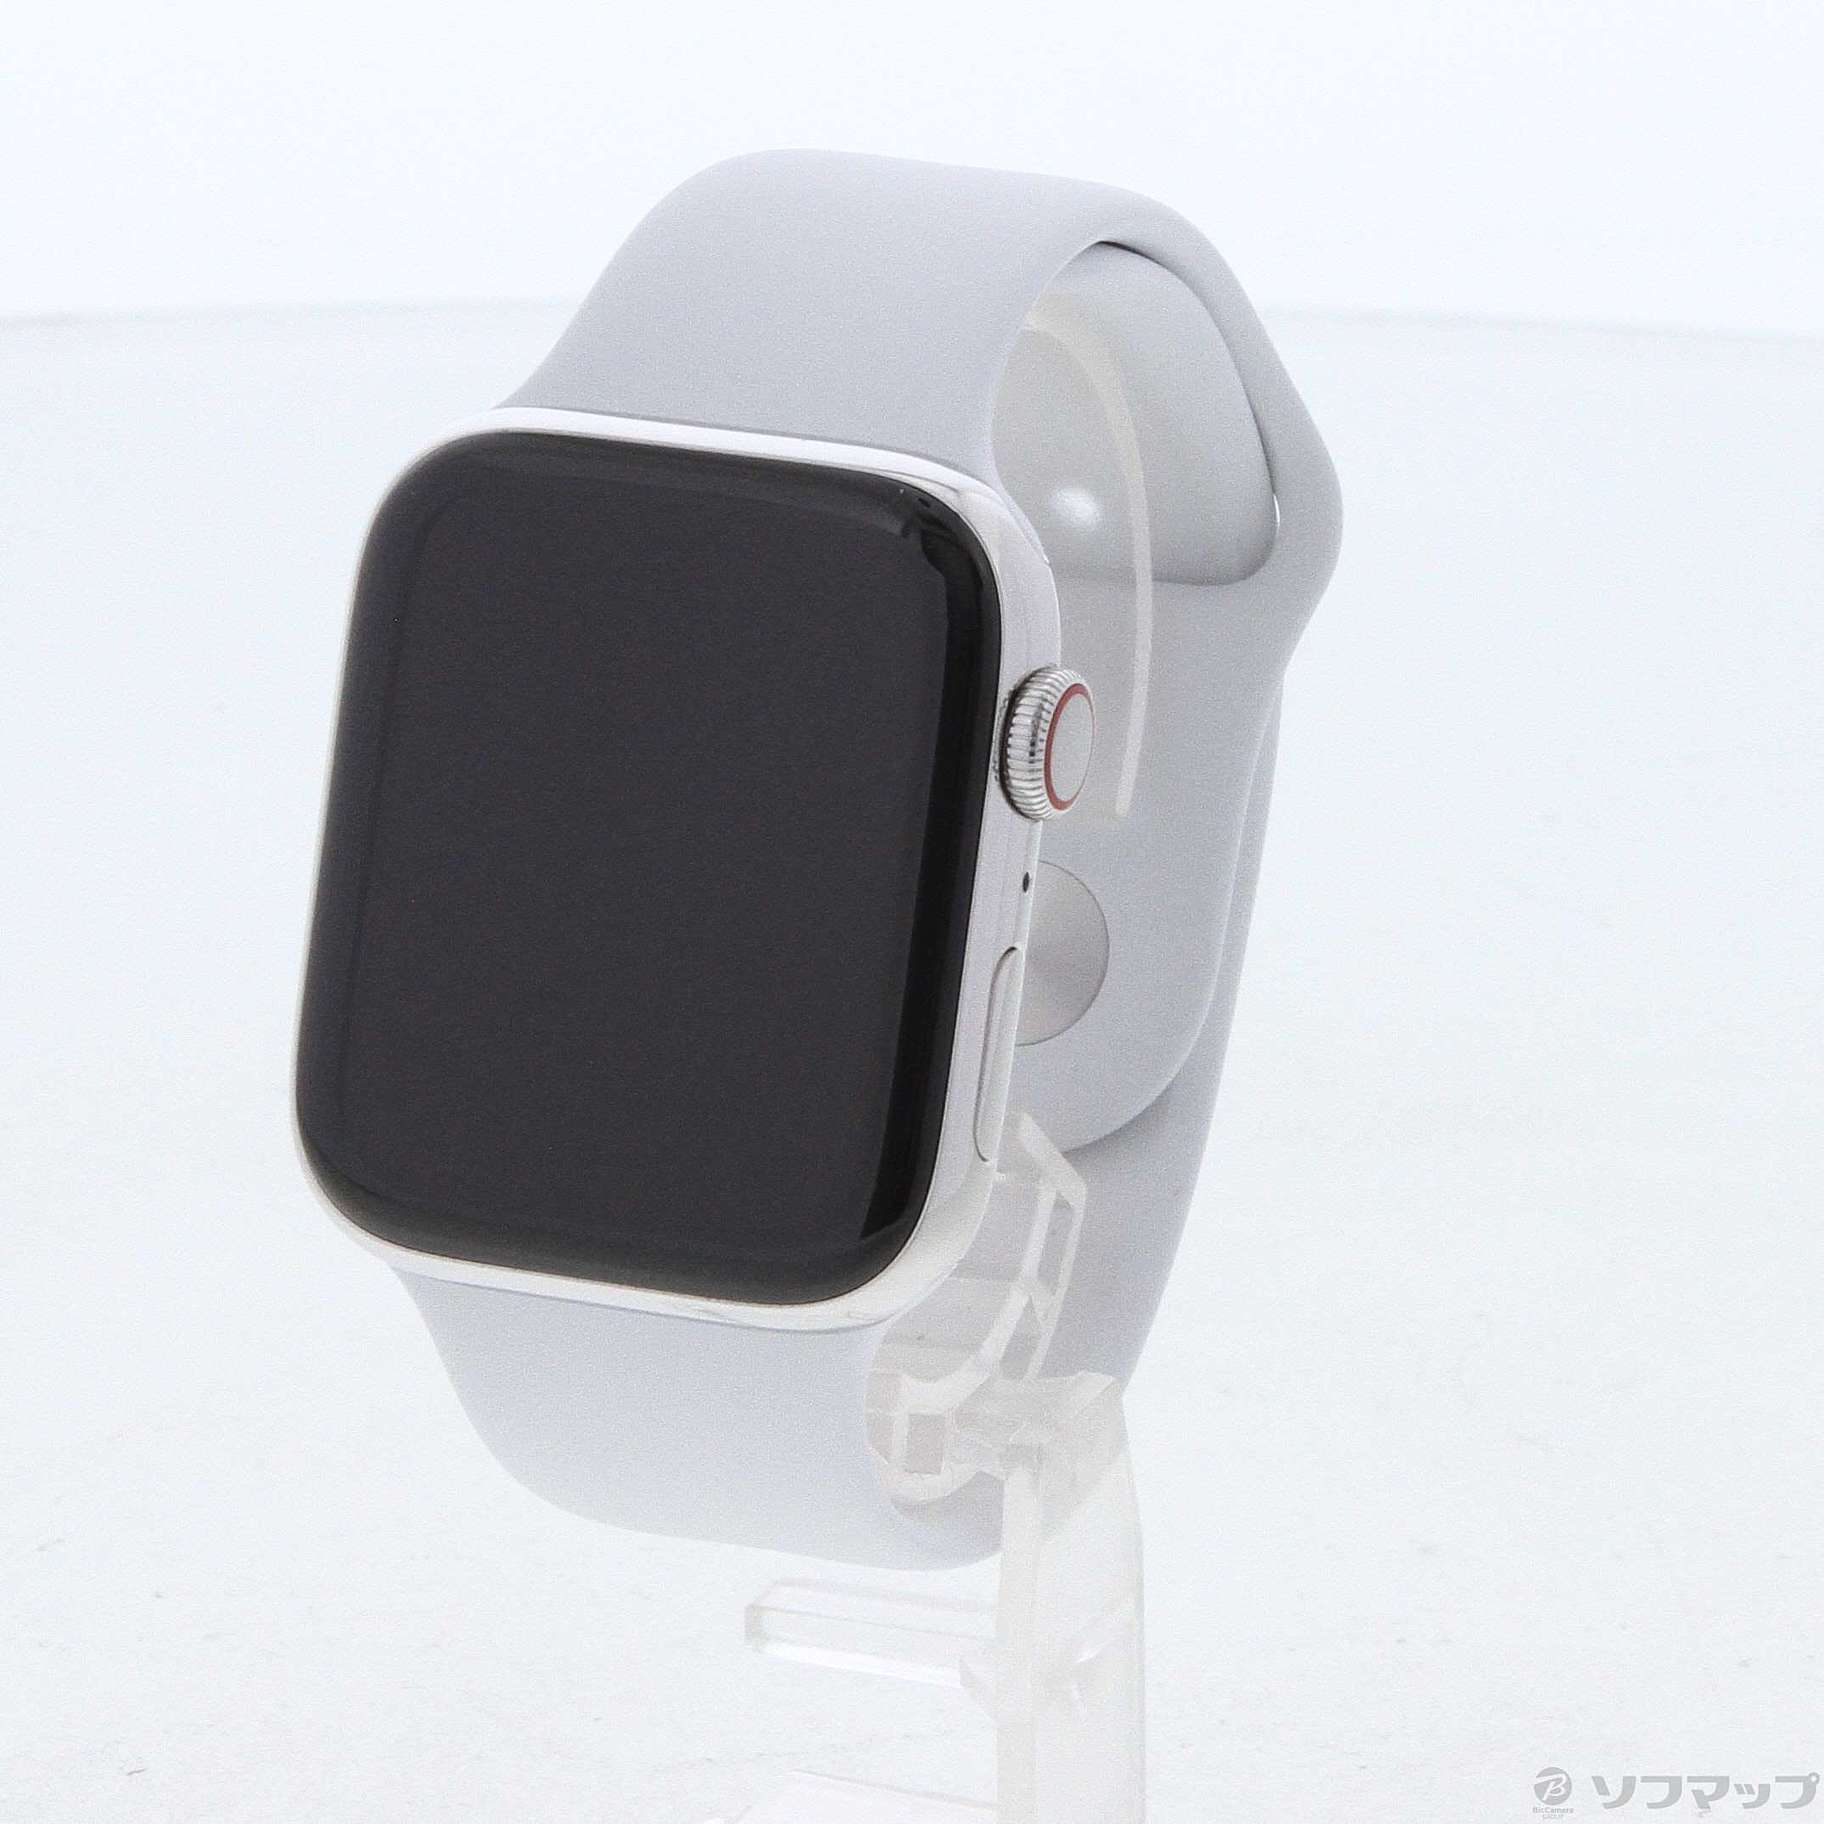 Apple Watch Series 4 ステンレスケース 44mm GPS